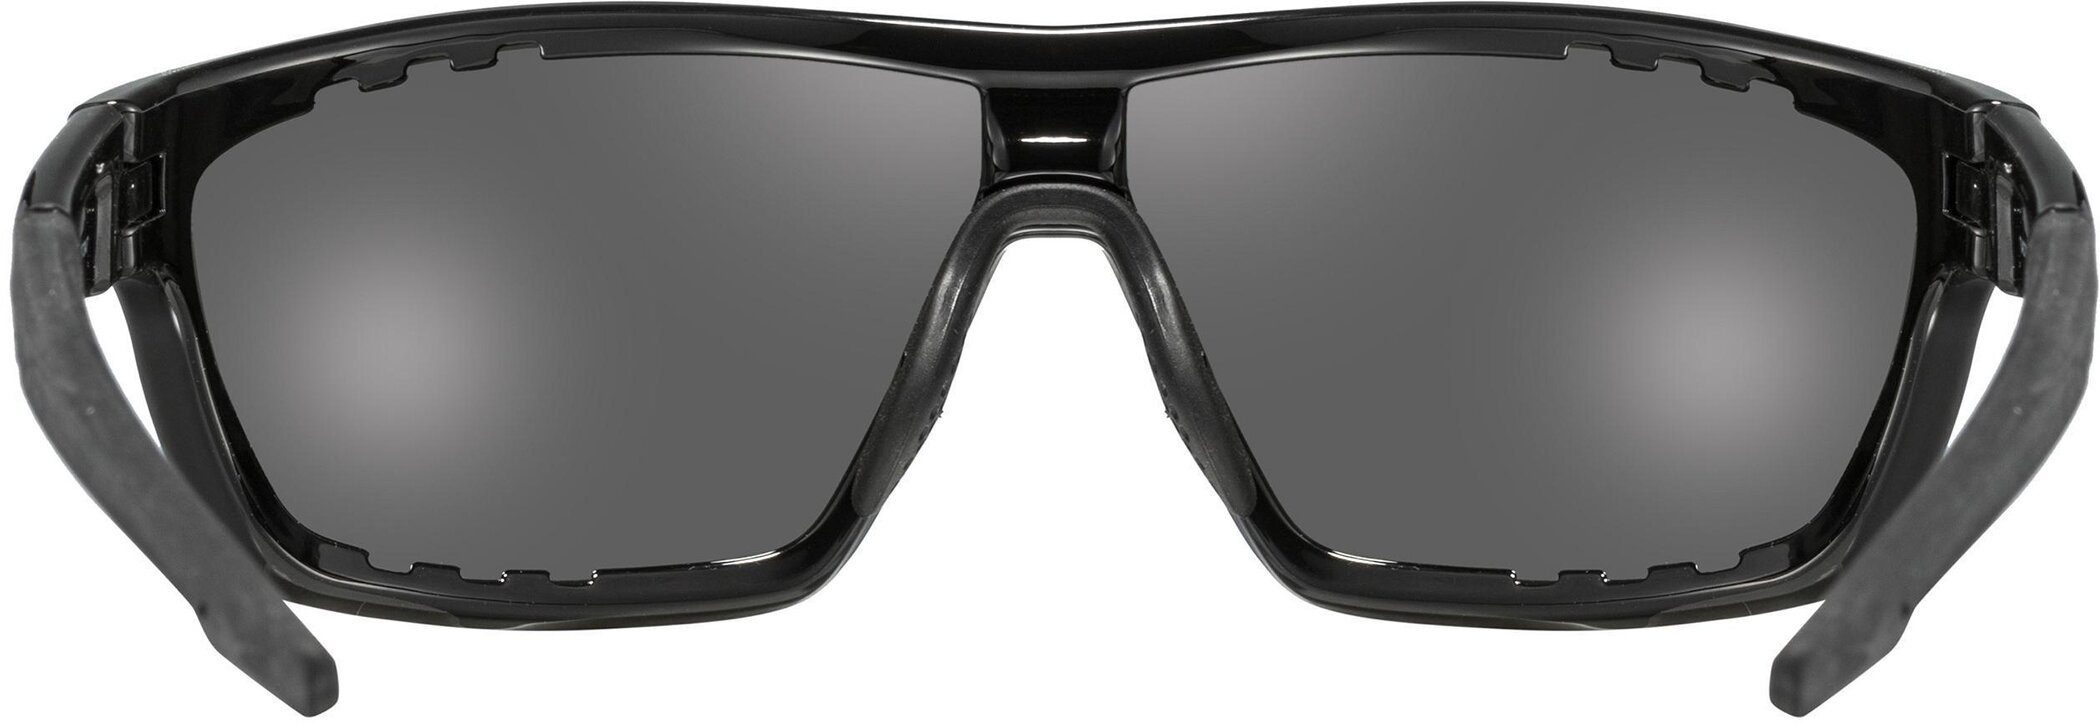 Sonnenbrille sportstyle 706 Uvex uvex BLACK